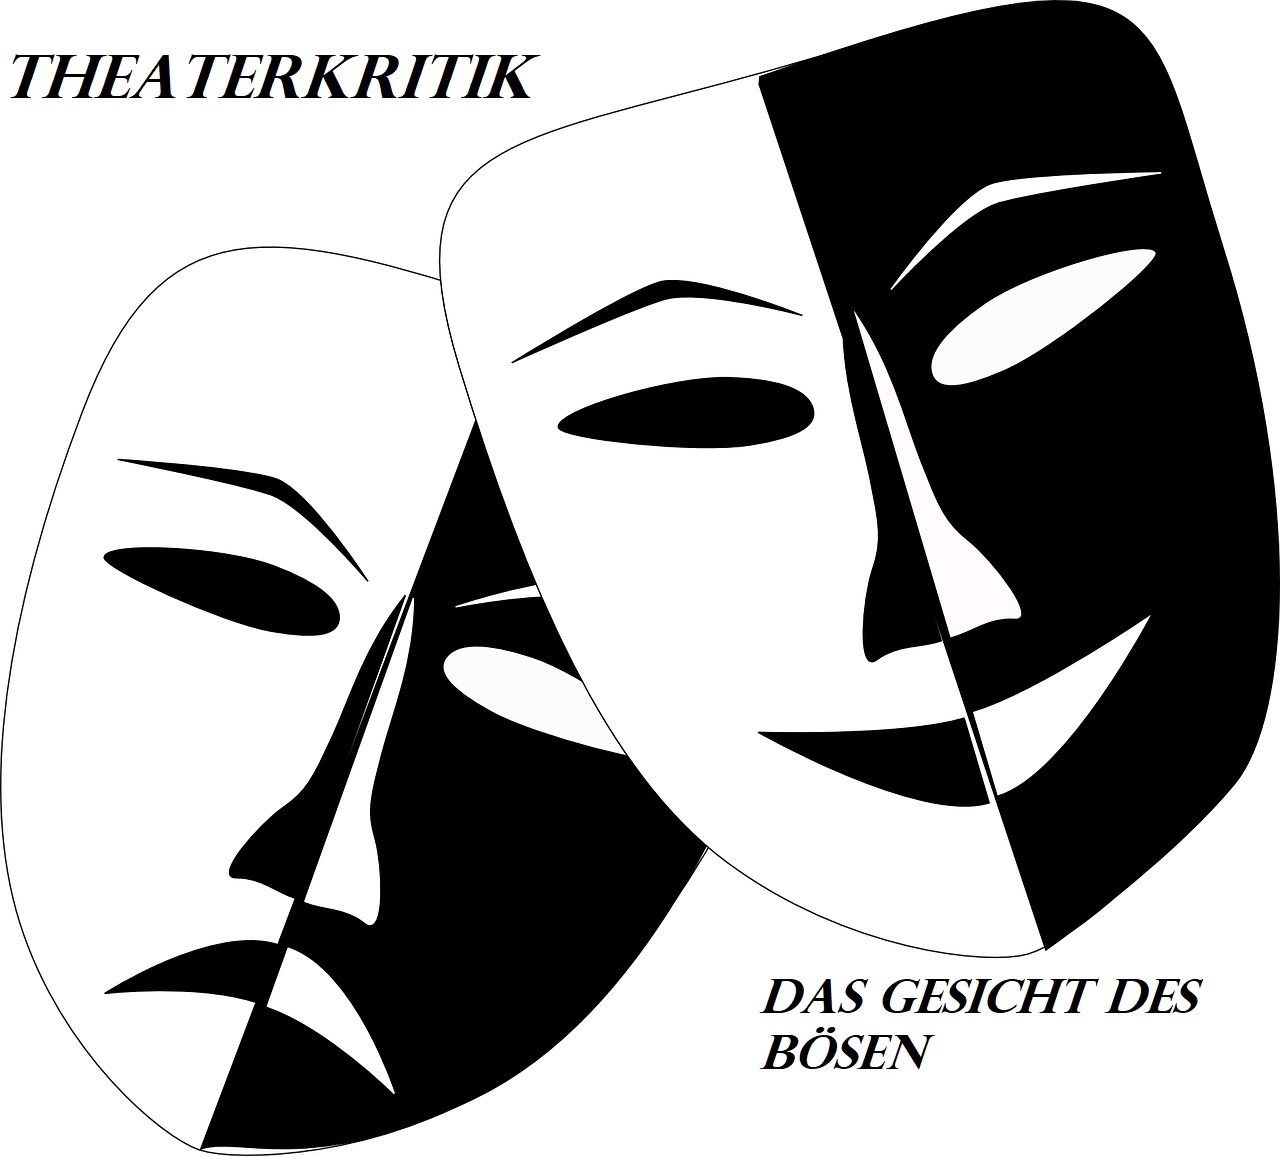 Theaterkritik: Das Gesicht des Bösen. Schauspiel Frankfurt, nach Text von Nis-Momme Stockmann, inszeniert von Lea Gockel.